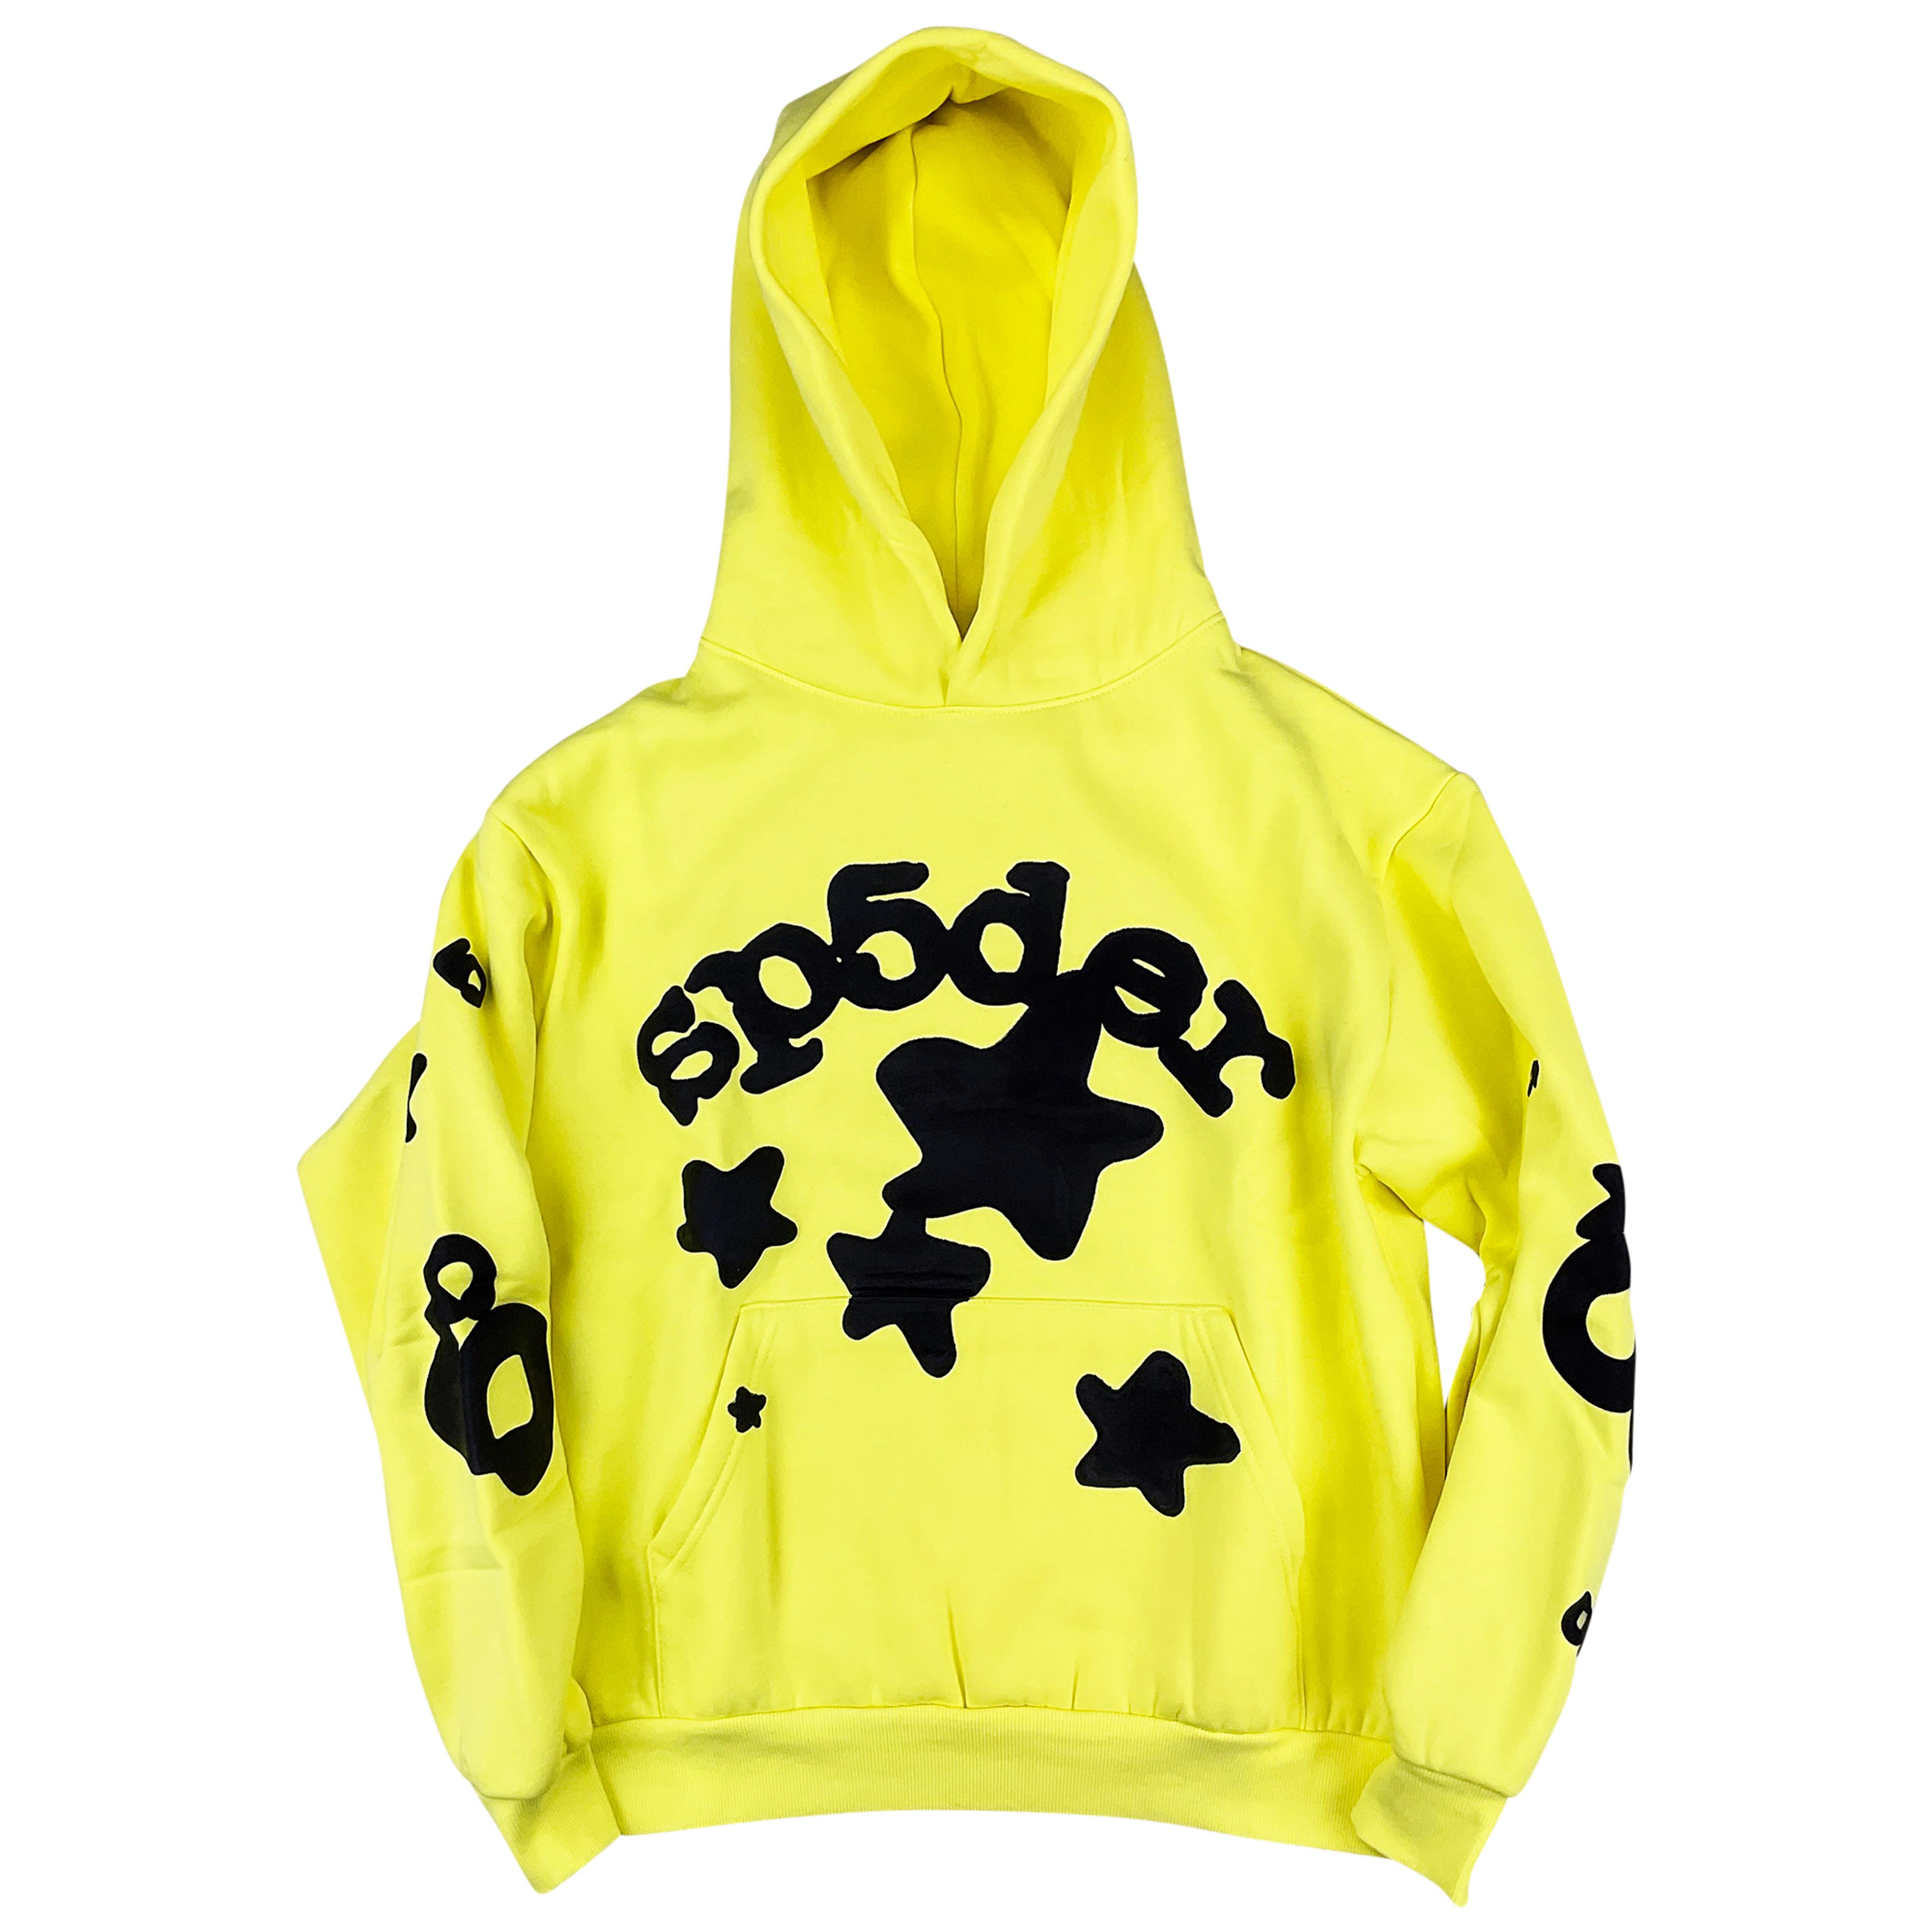 Sp5der Beluga Gold Hoodie Sweatshirt | Spider Worldwide